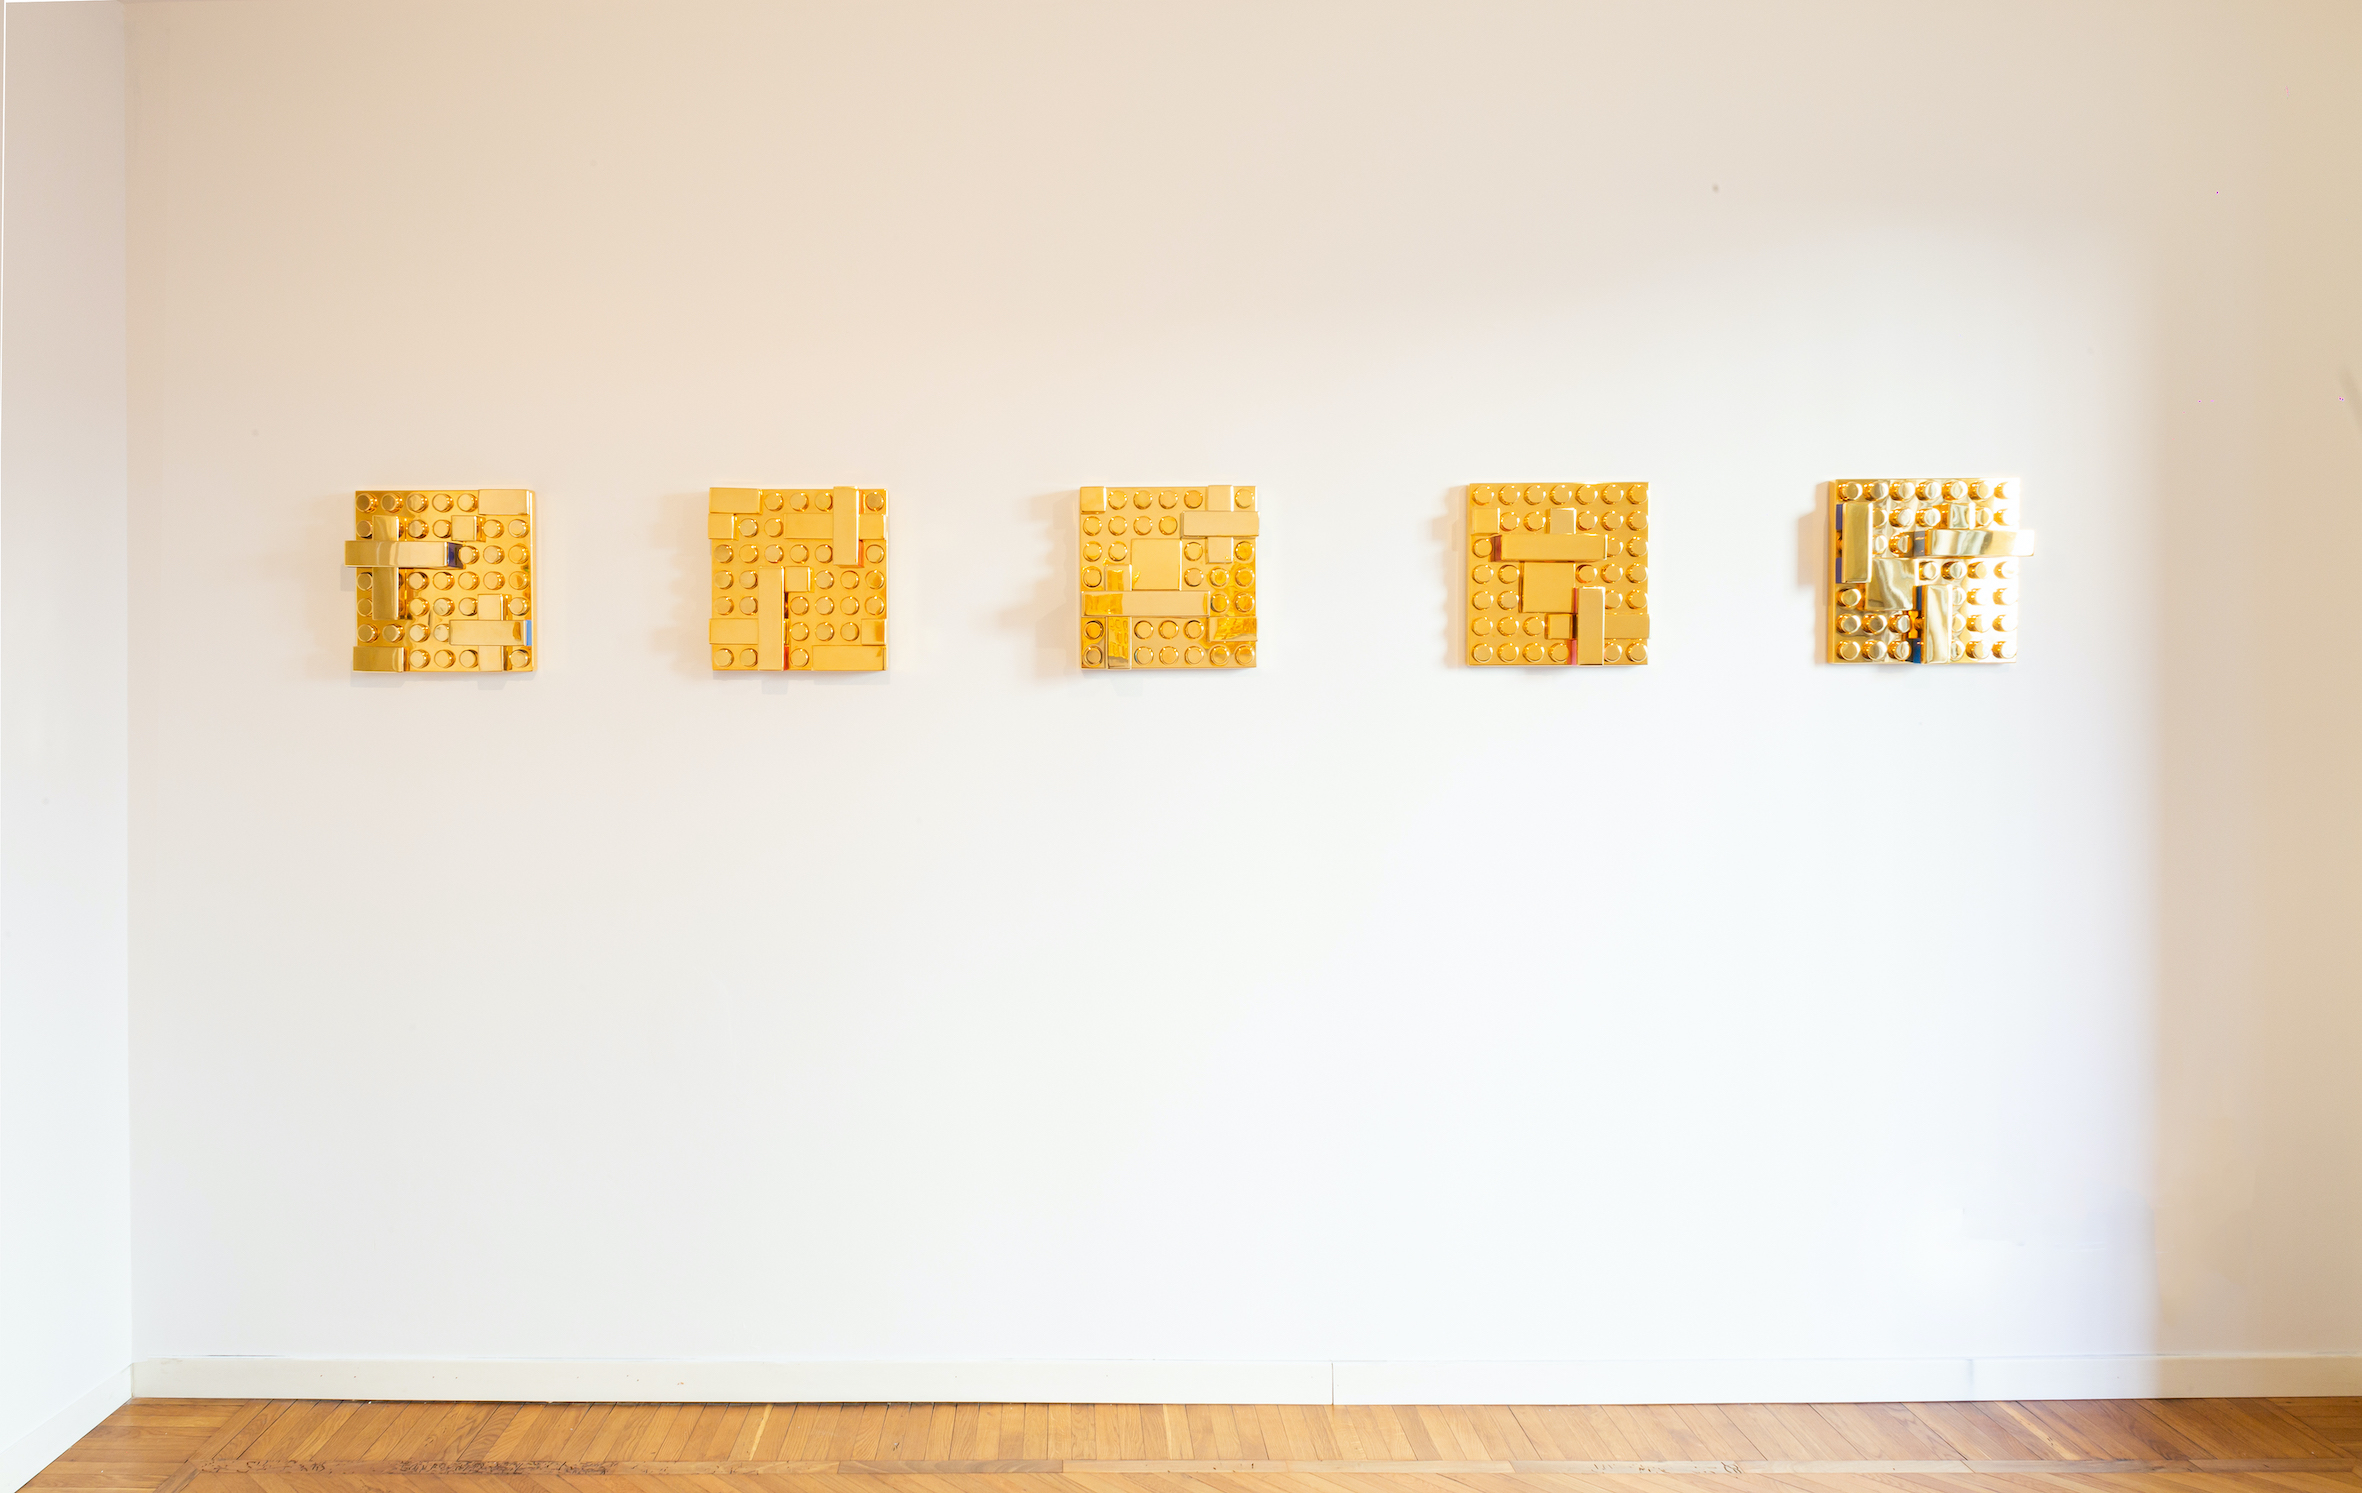 La provocazione dell’oro come specchio ironico di una società opulenta. Il progetto di Matteo Negri a Milano